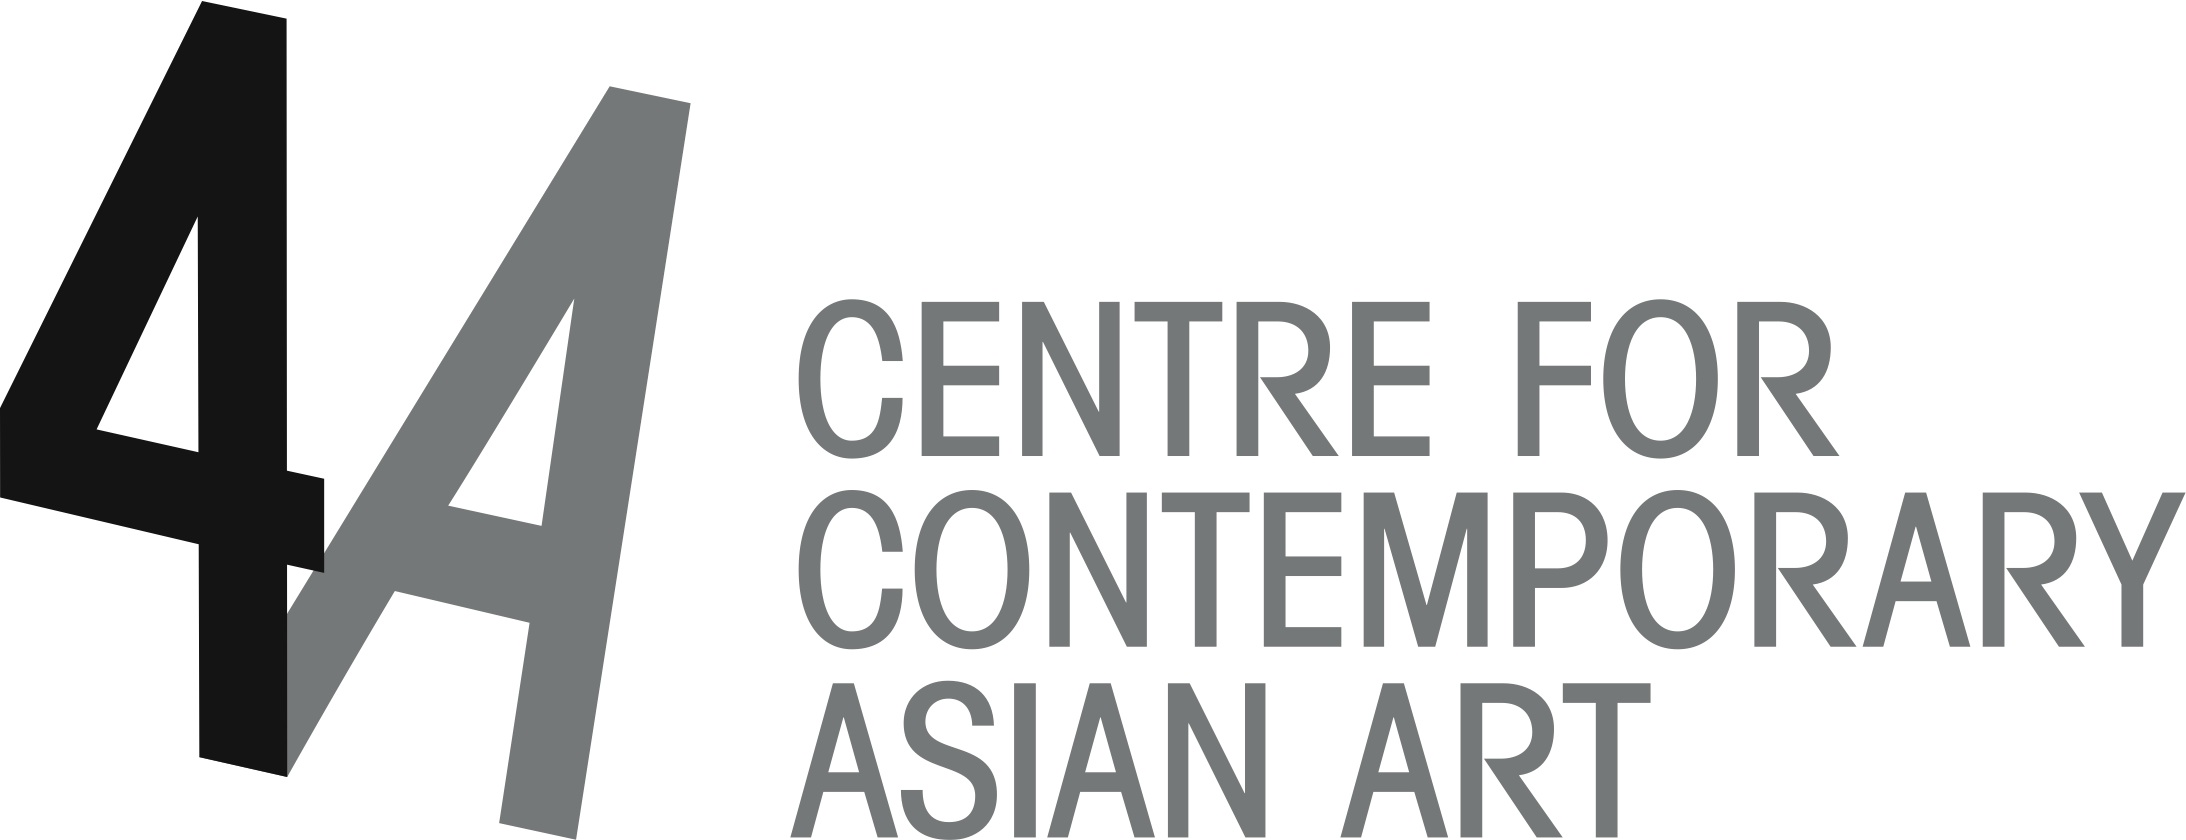 4A Centre for Contemporary Asian Art